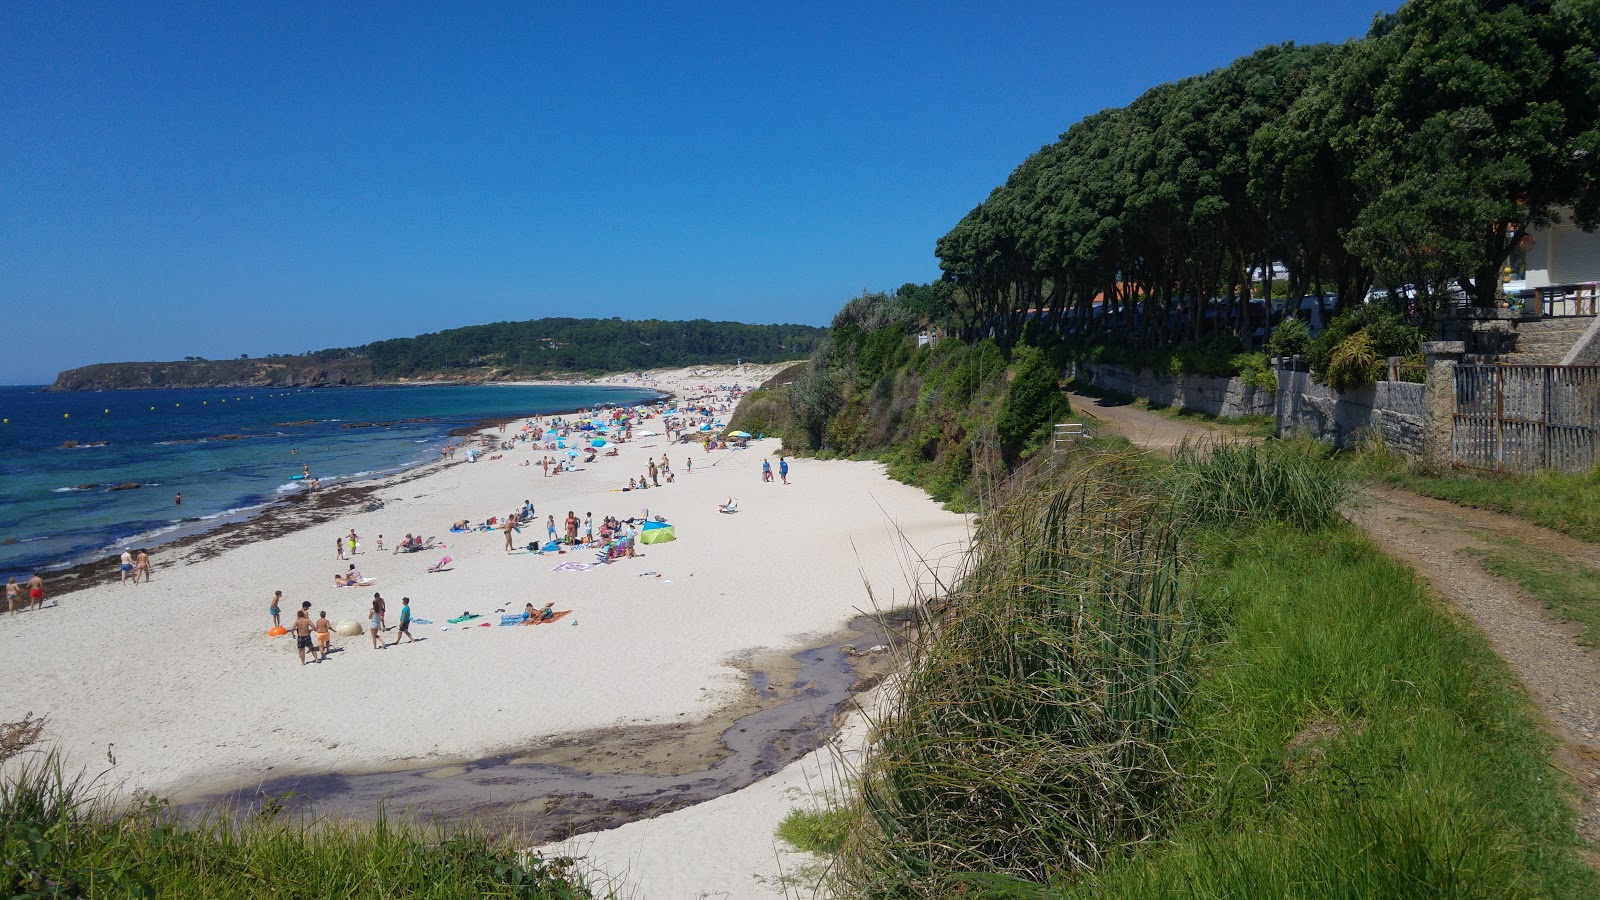 Pragueira beach'in fotoğrafı - rahatlamayı sevenler arasında popüler bir yer